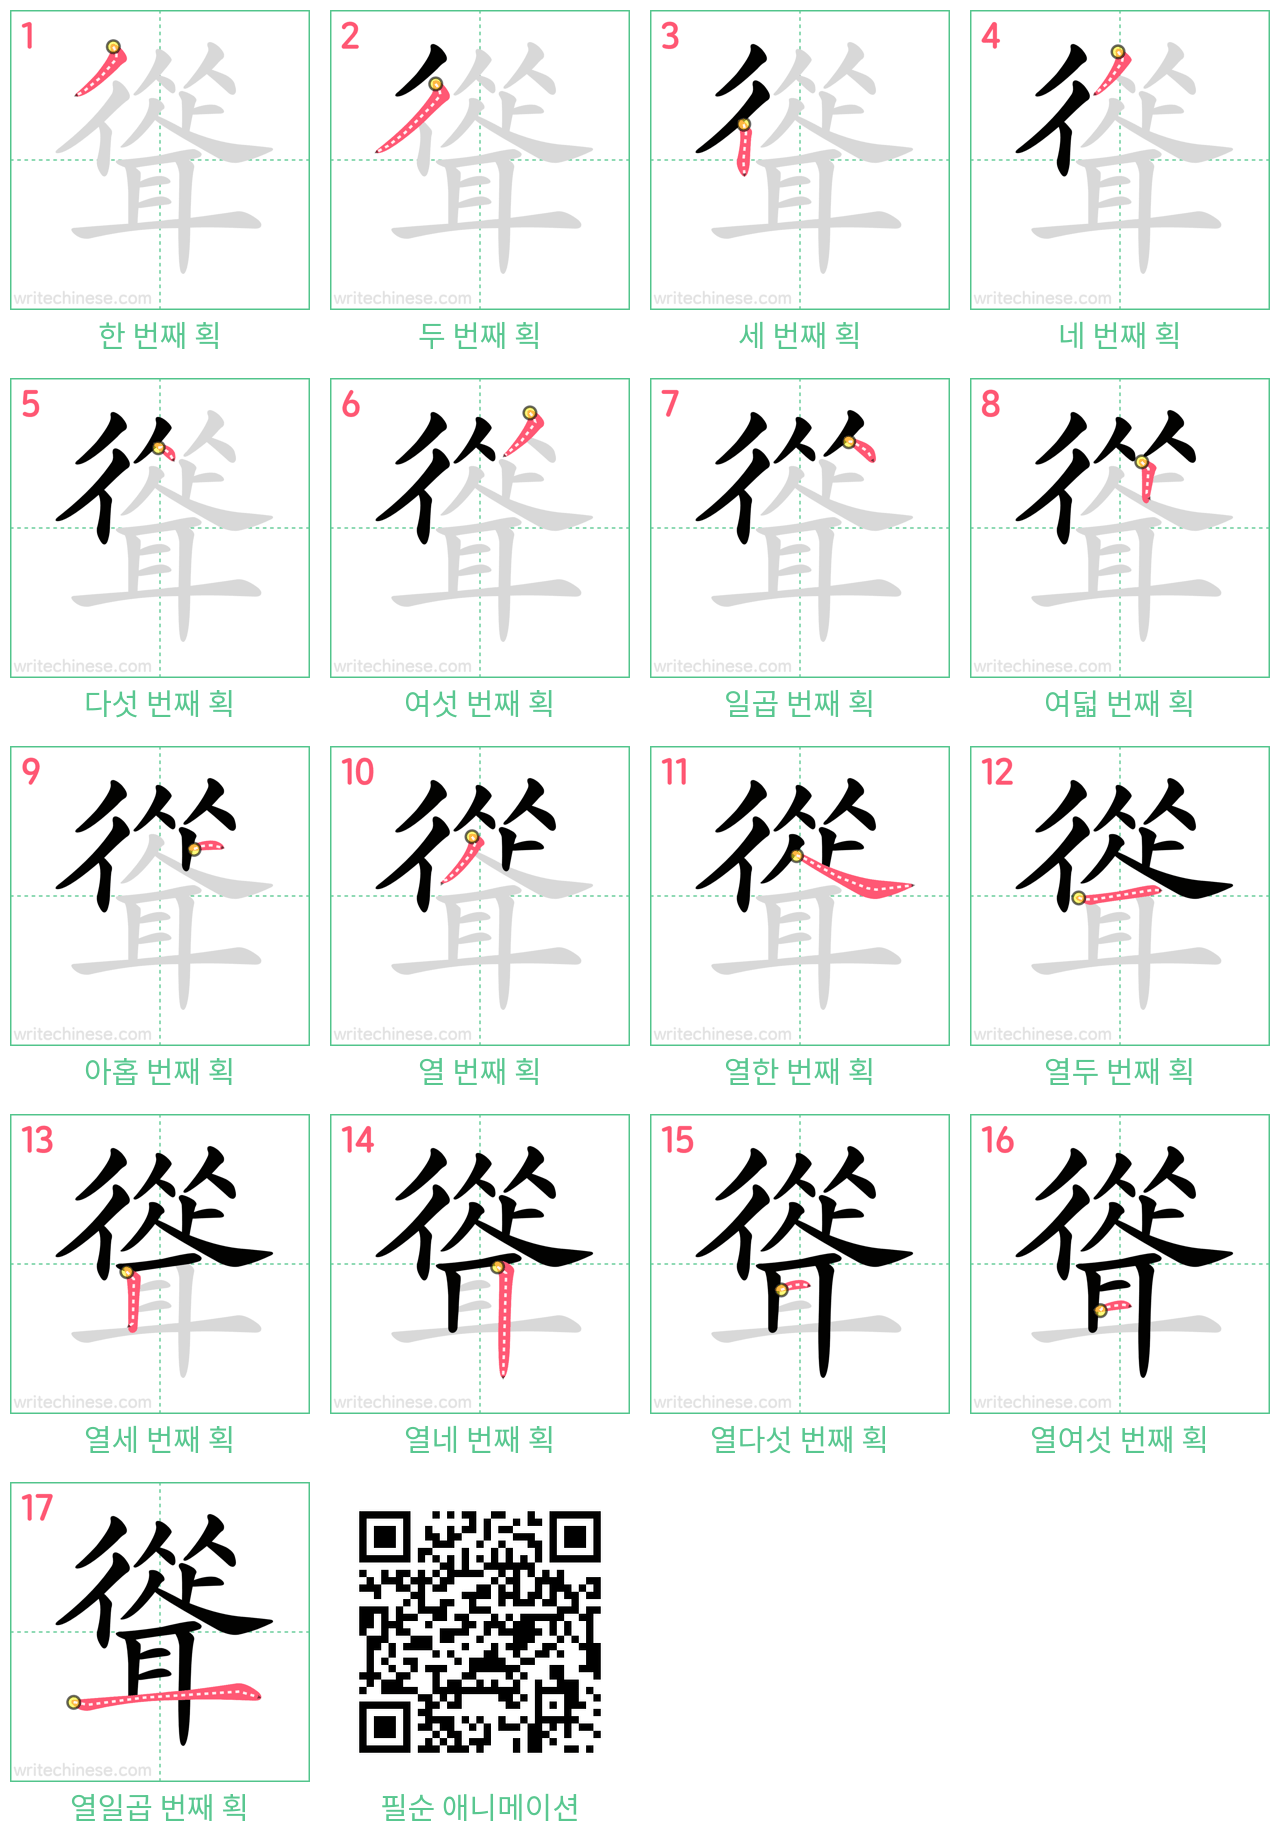 聳 step-by-step stroke order diagrams